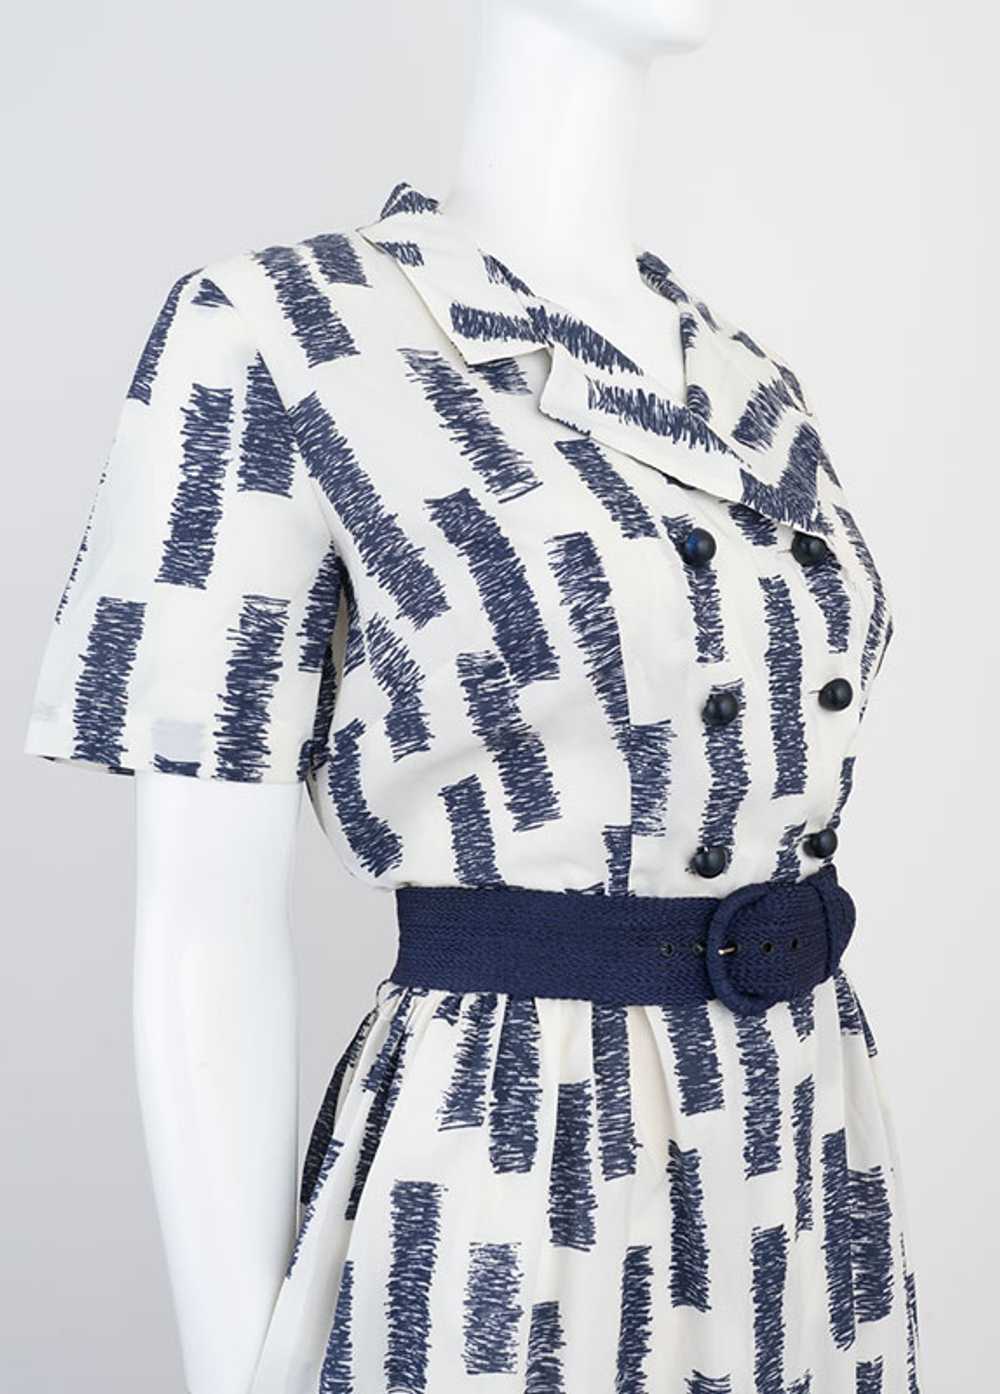 Mod Print 1960s Dress - image 3